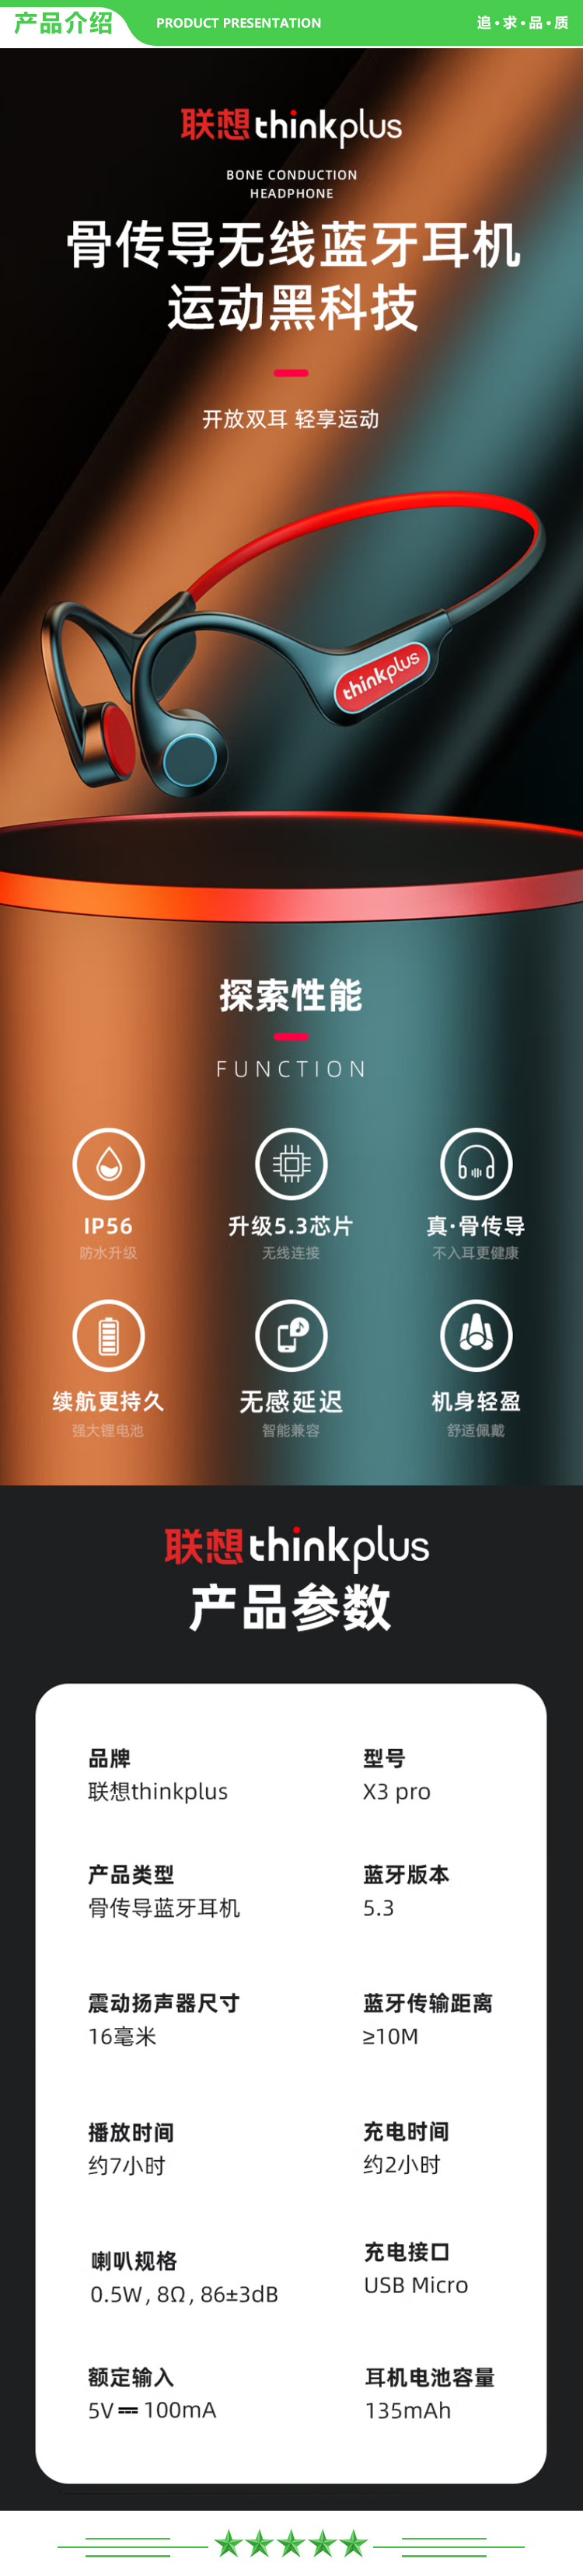 联想 Lenovo thinkplus X3pro 黑红色 骨传导蓝牙耳机运动无线耳挂式 不入耳跑步骑行 手机通用蓝牙5.3 .jpg